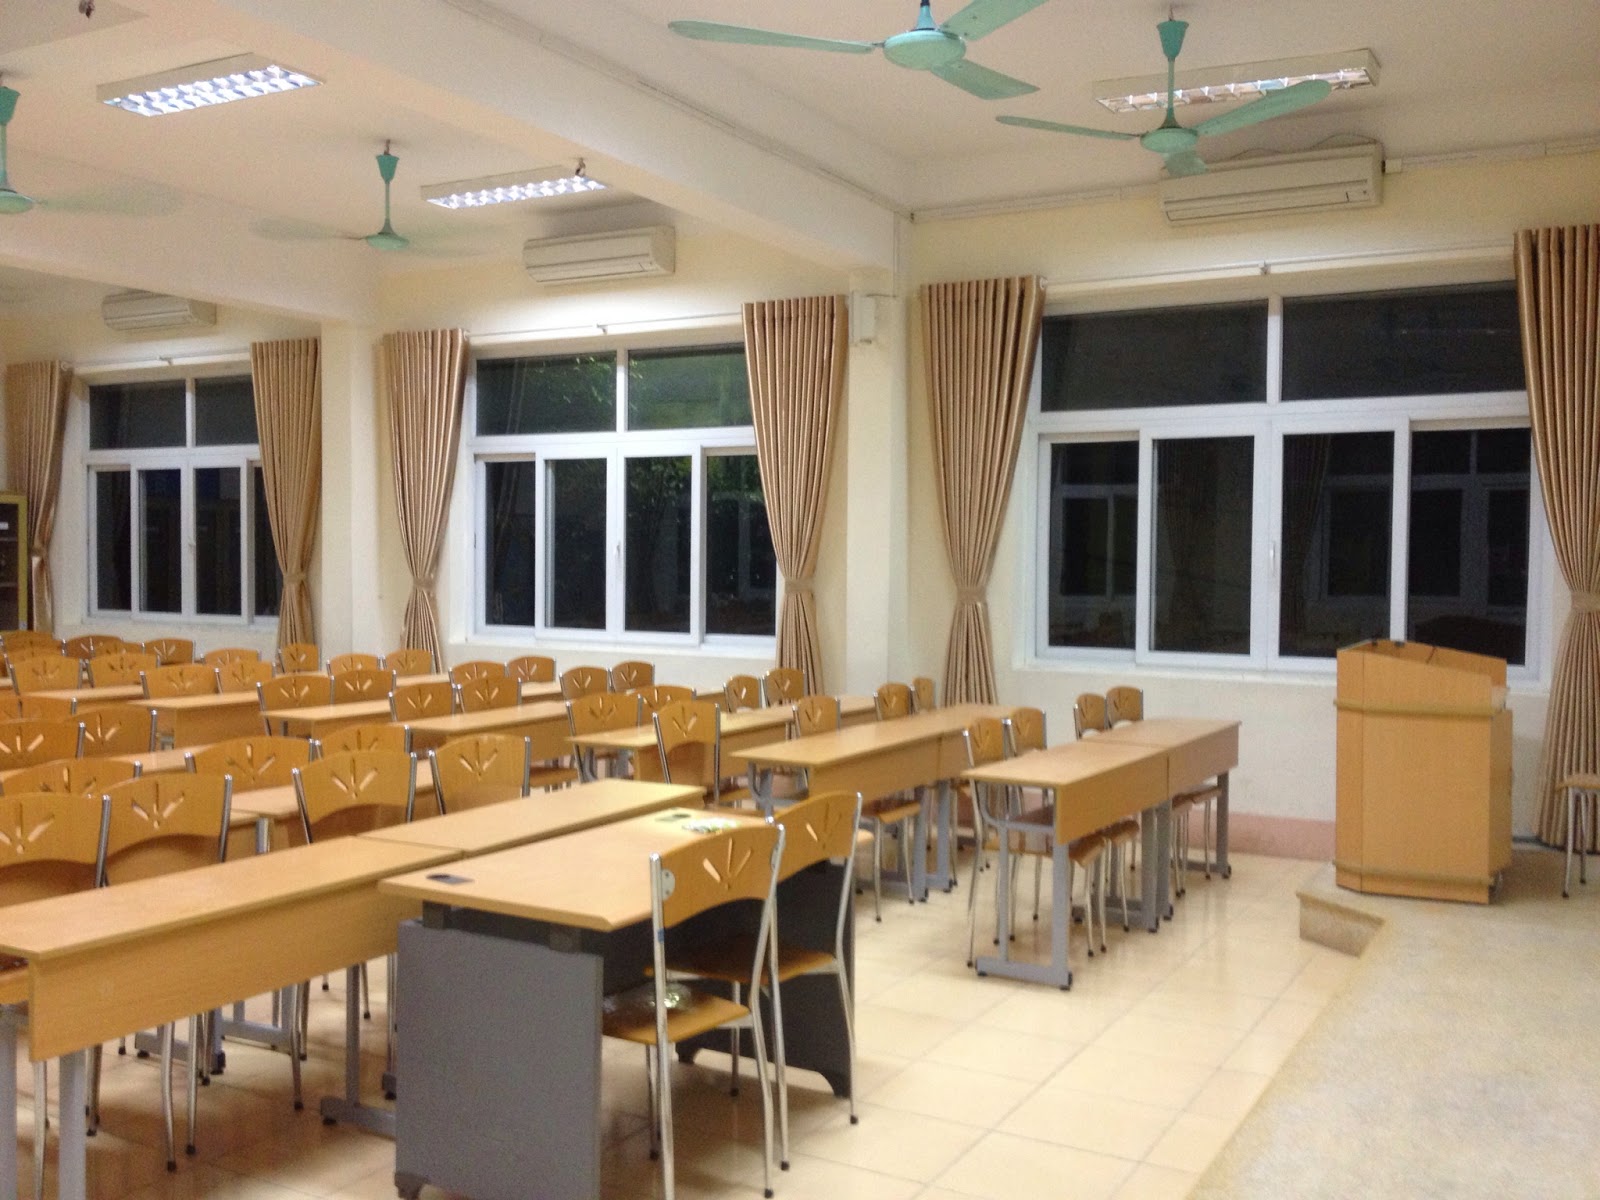 Đơn vị cung cấp và lắp đặt rèm cửa trường học giá rẻ tại Hà Nội